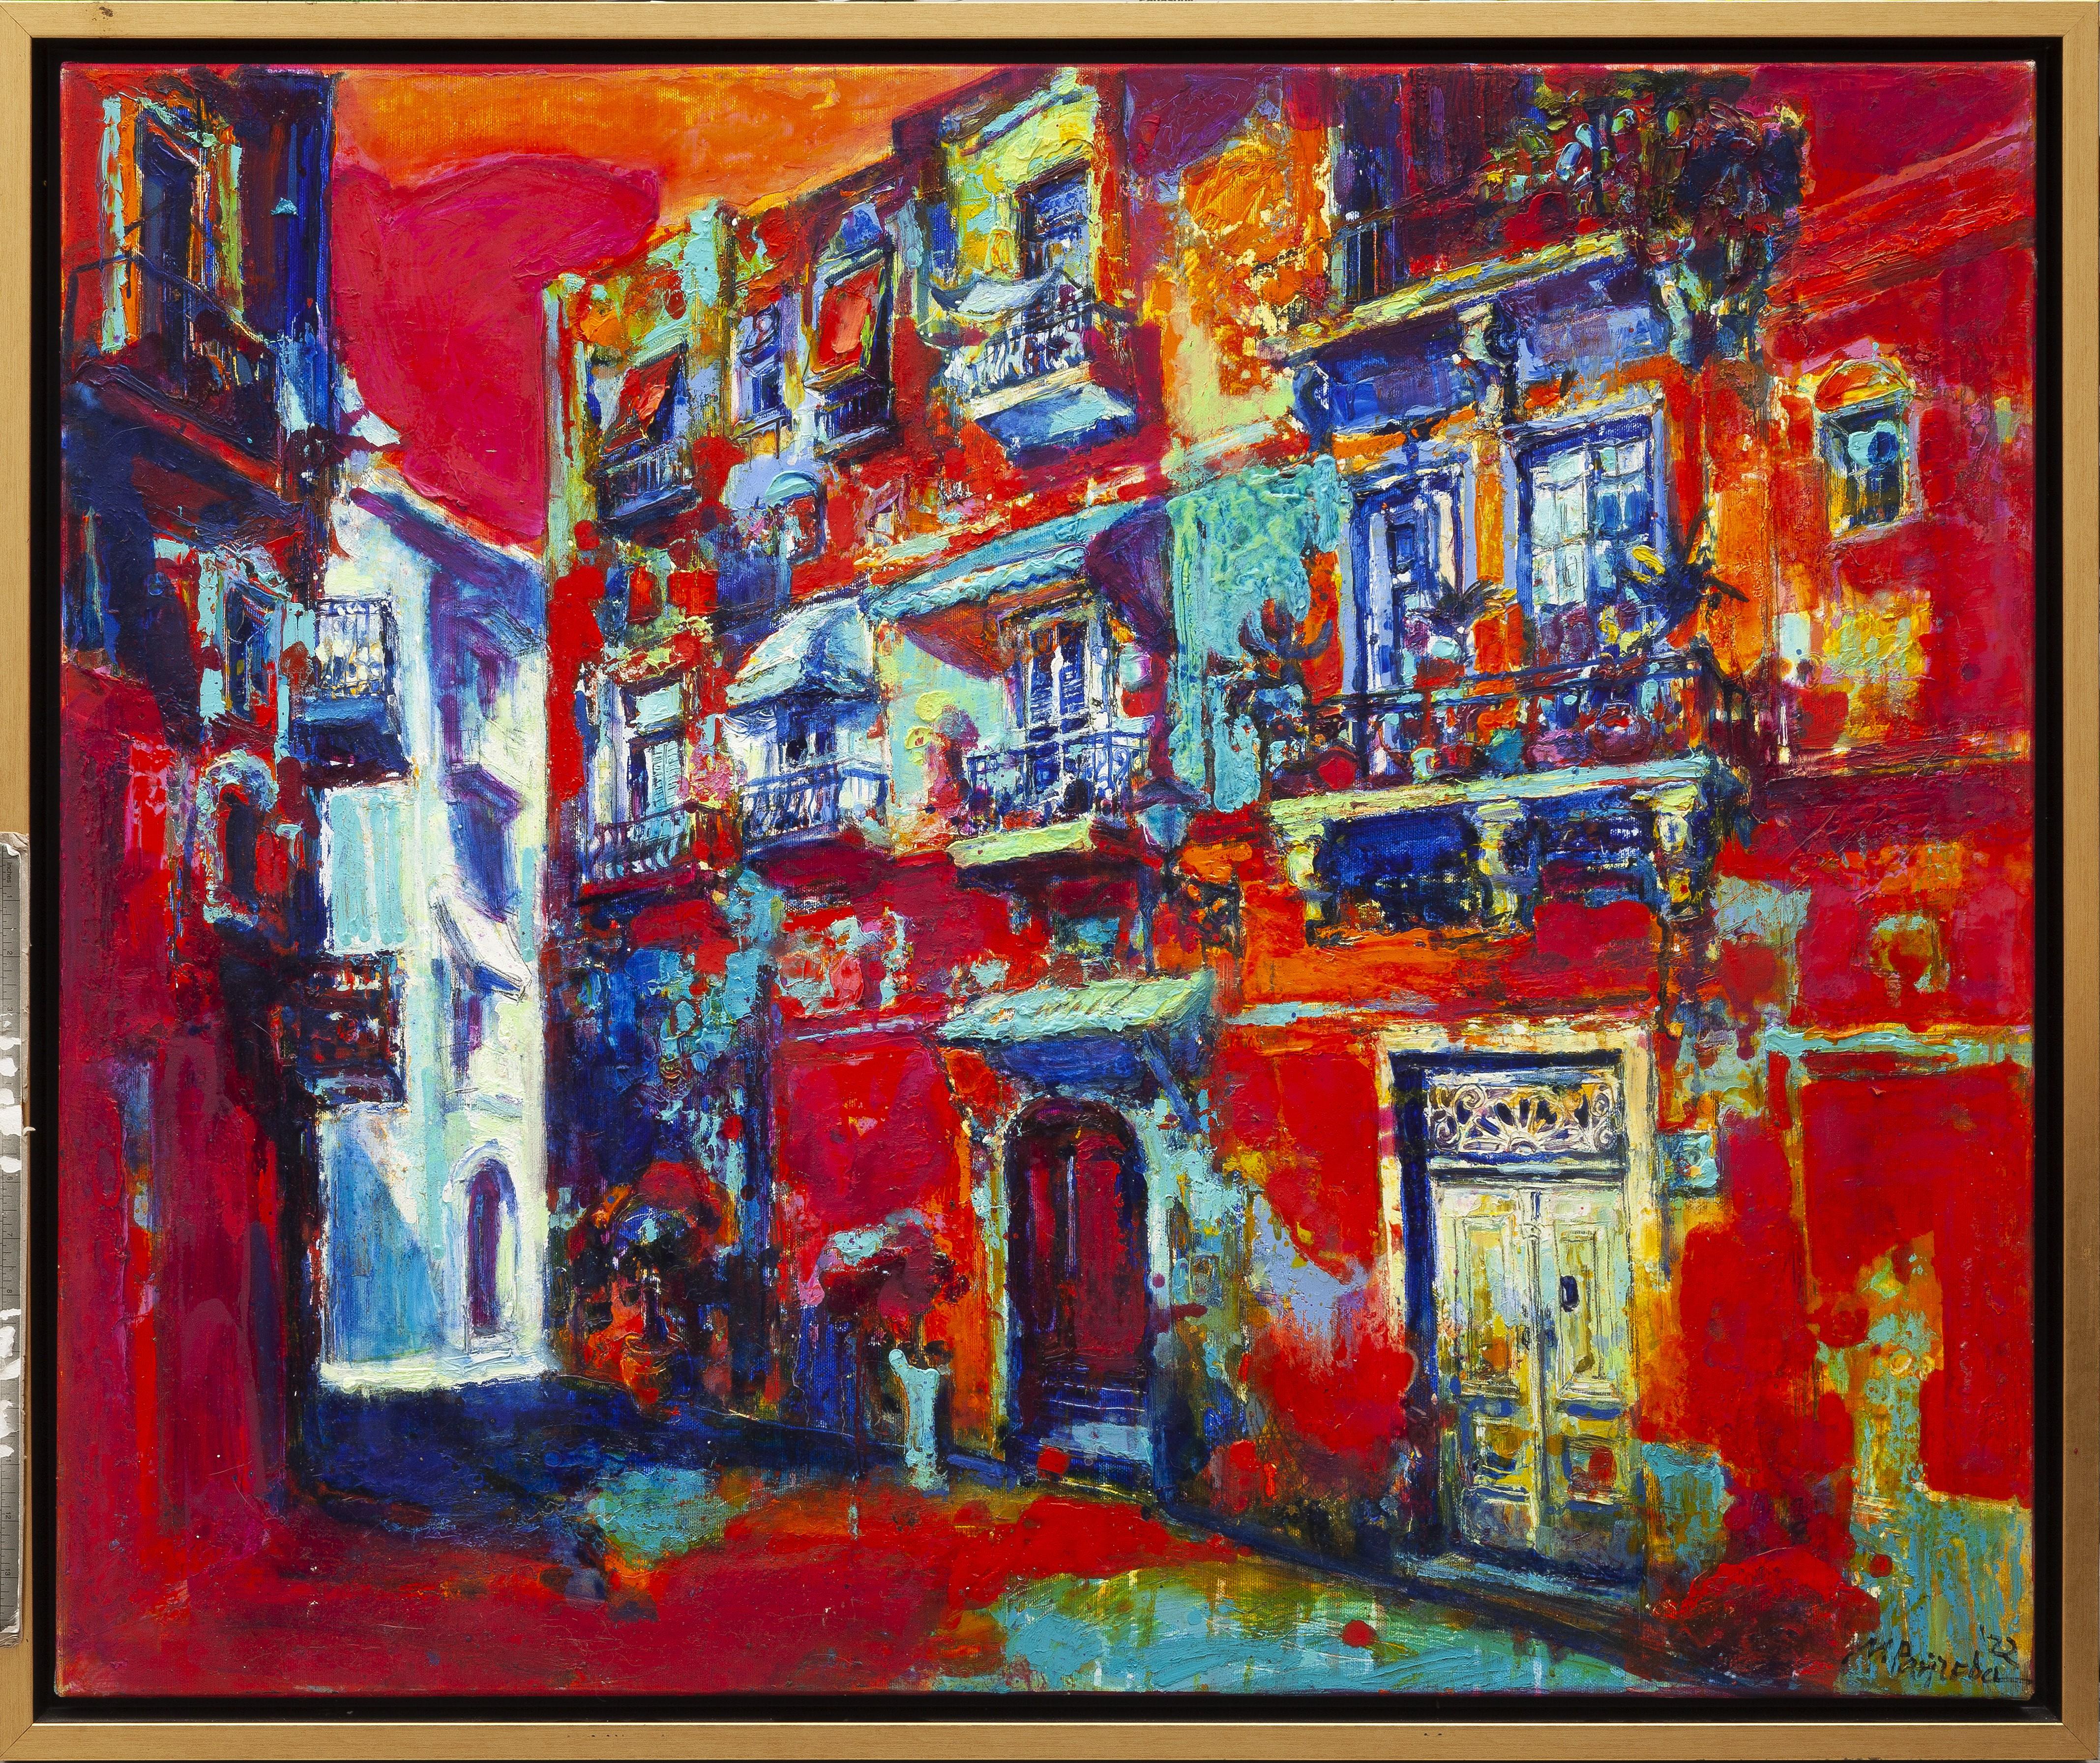 Maria Raycheva Landscape Painting – Inviting the Night - Landschaftsmalerei Farben Rot Weiß Blau Gelb Elfenbein Rosa